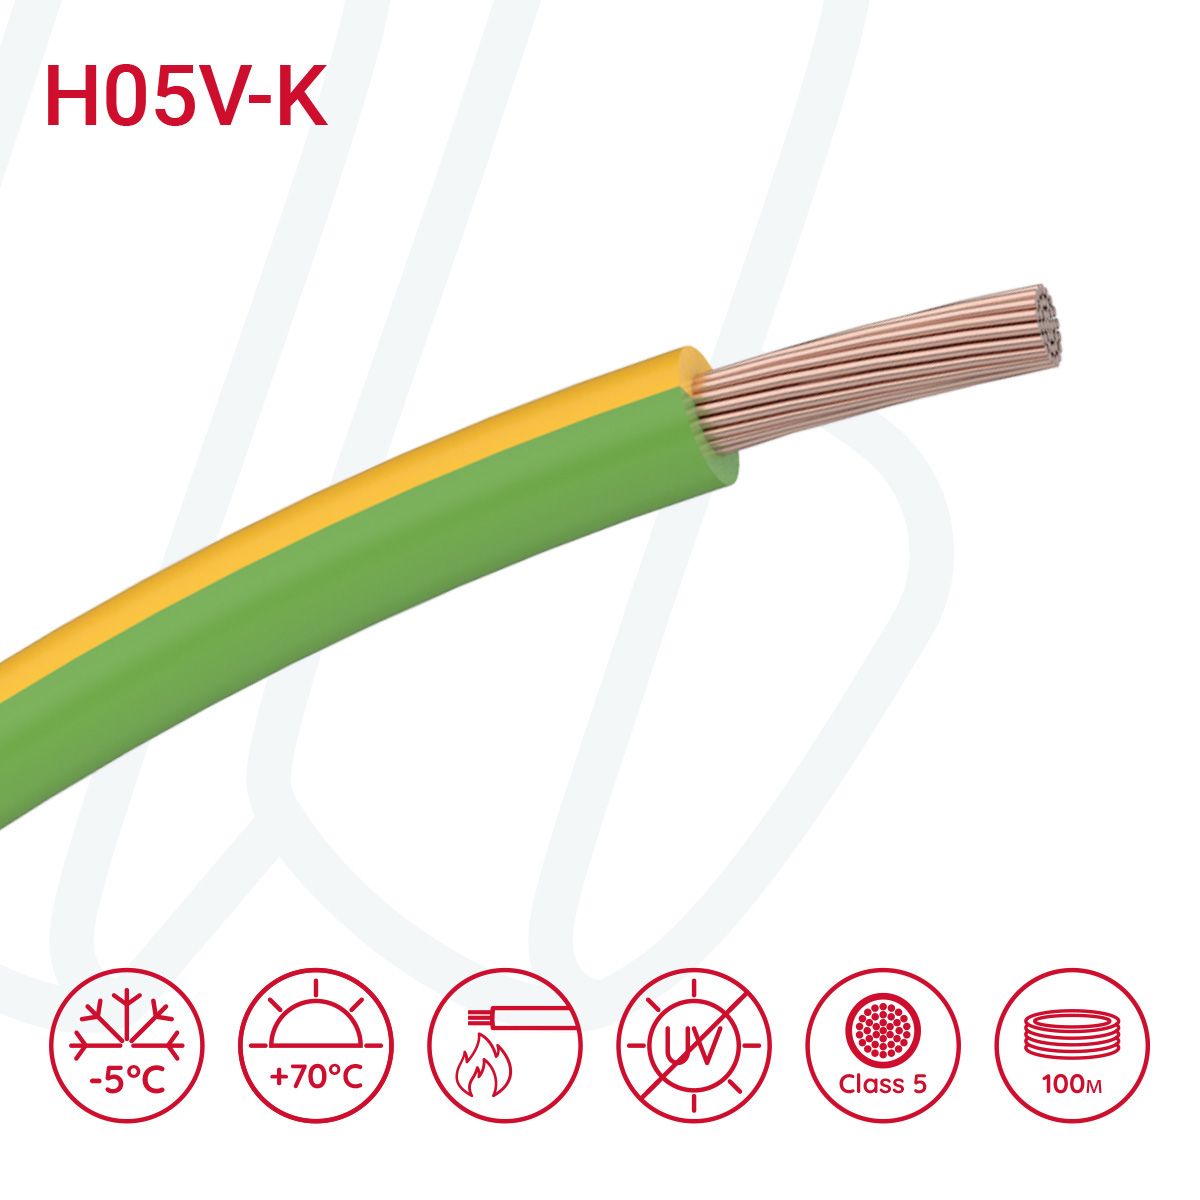 Провід монтажний гнучкий H05V-K 0.5 мм² жовто-зелений, 01, 0.5